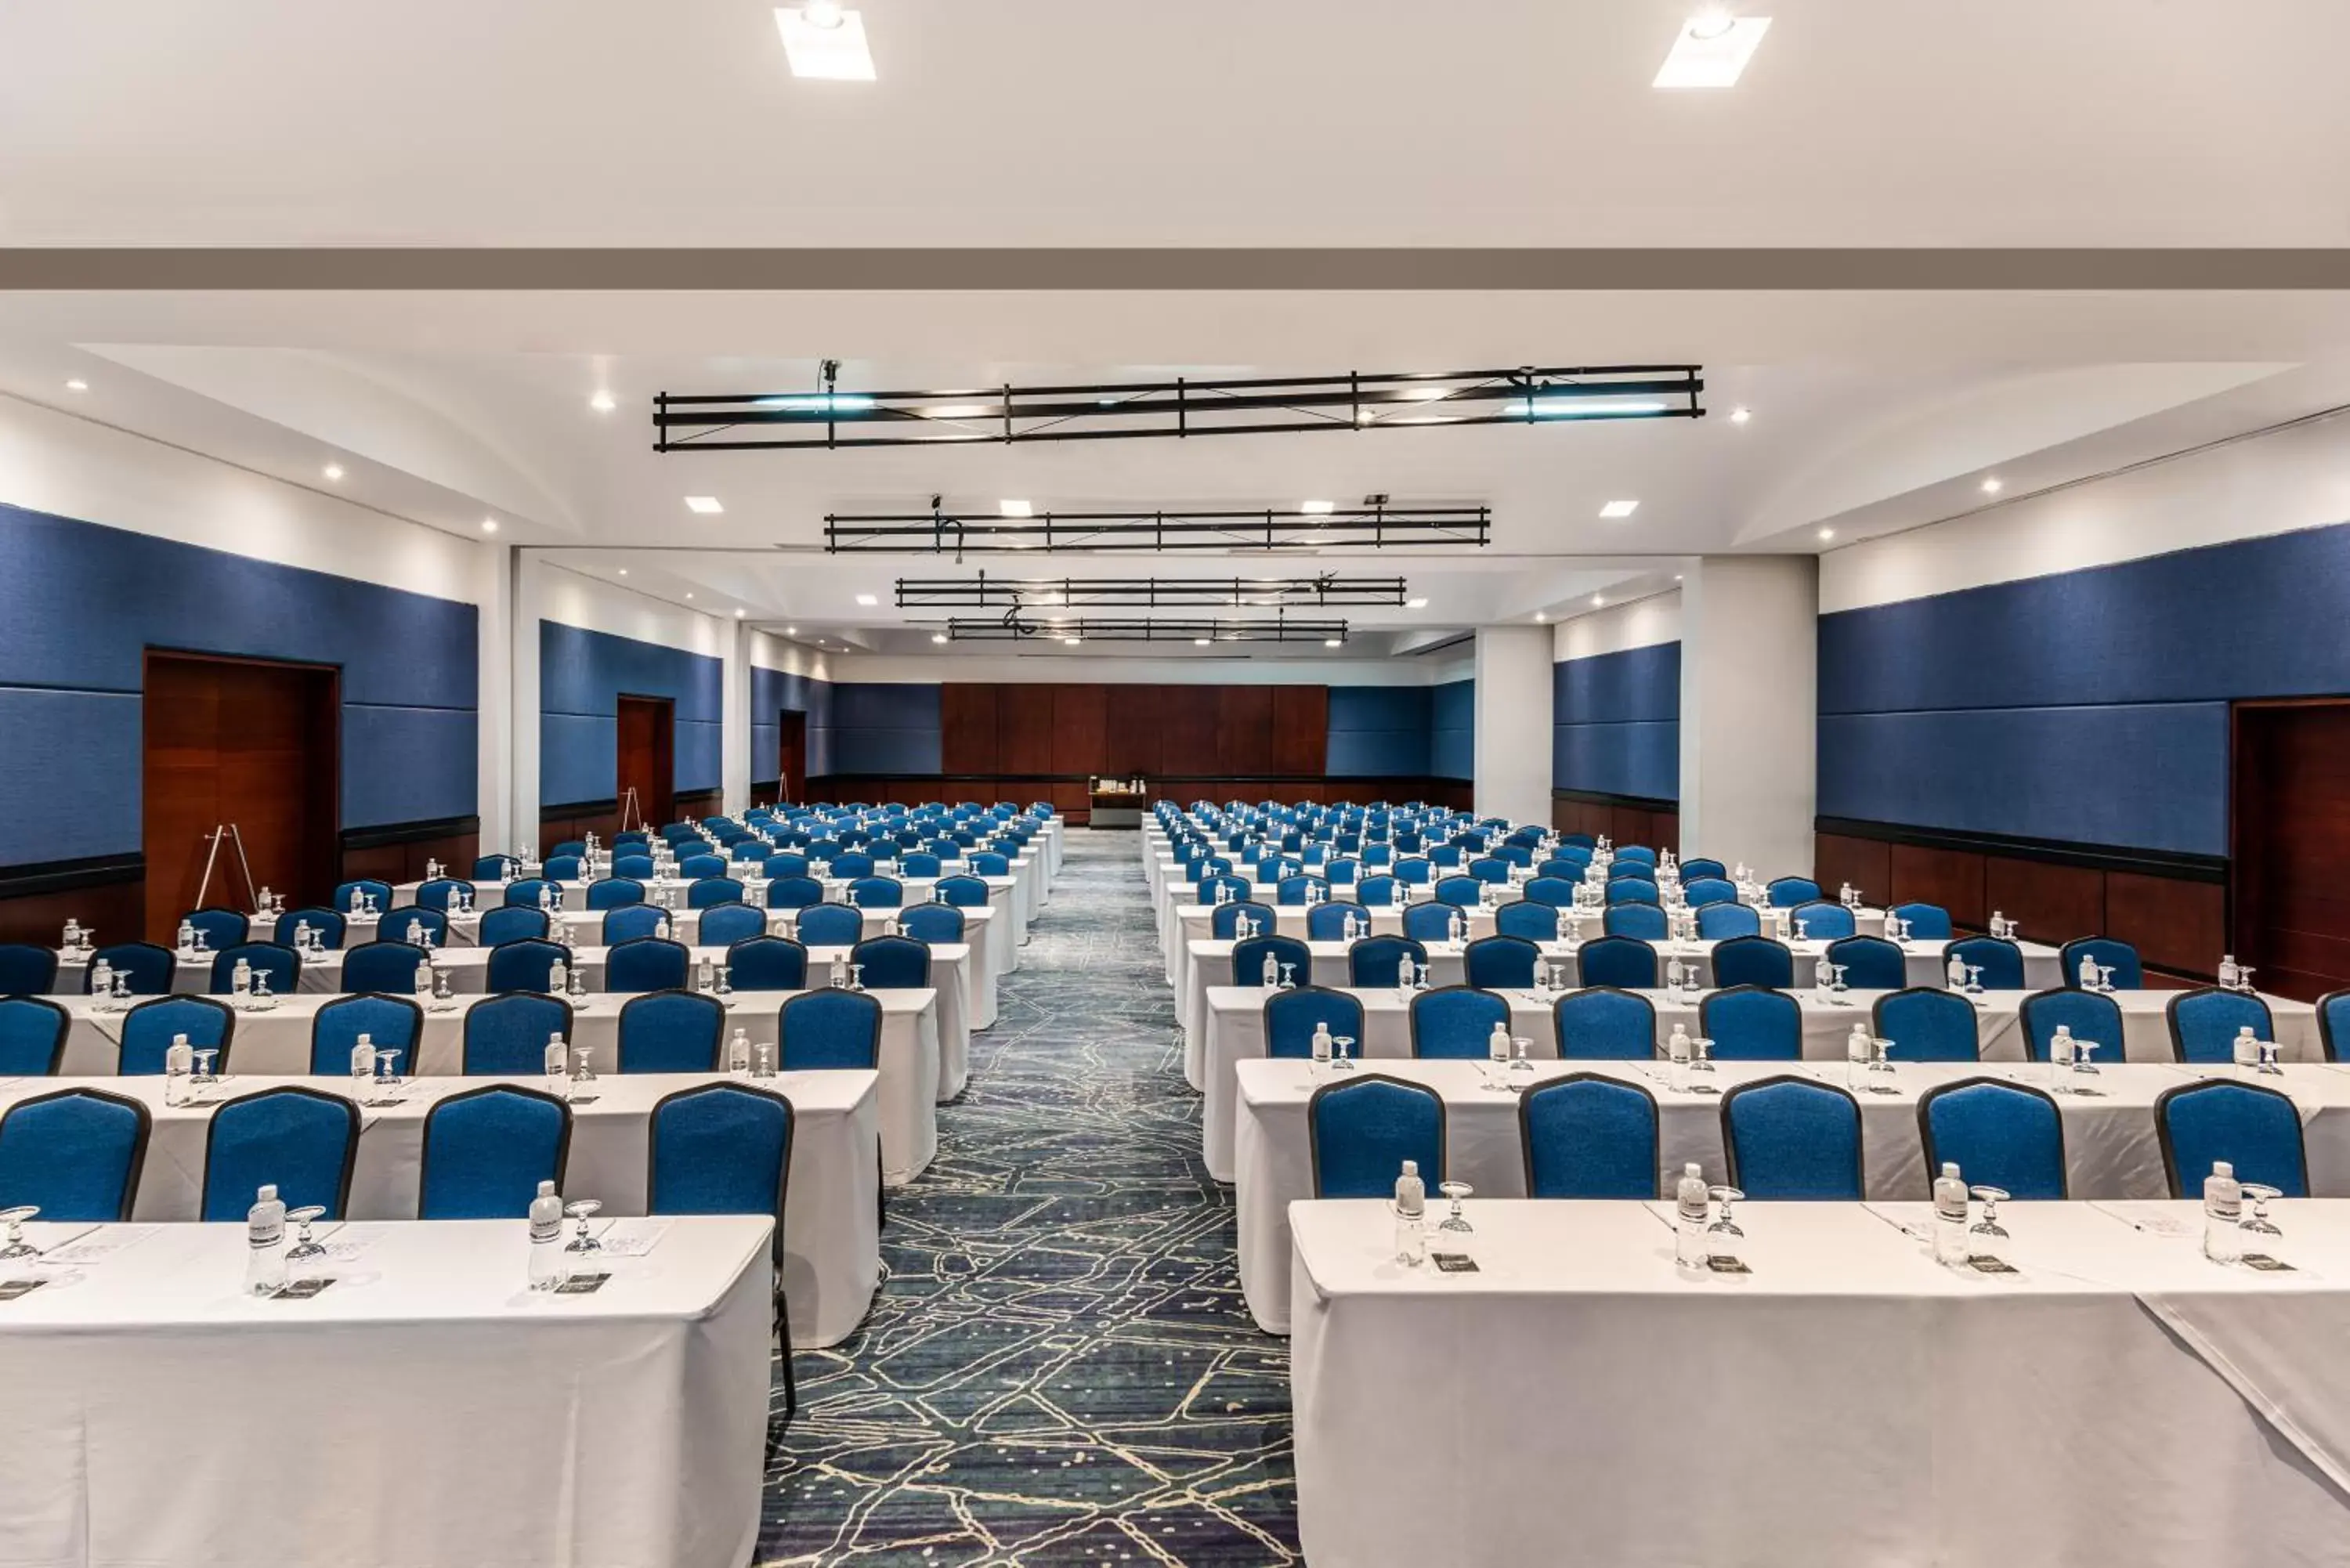 Meeting/conference room in Cosmos 100 Hotel & Centro de Convenciones - Hoteles Cosmos